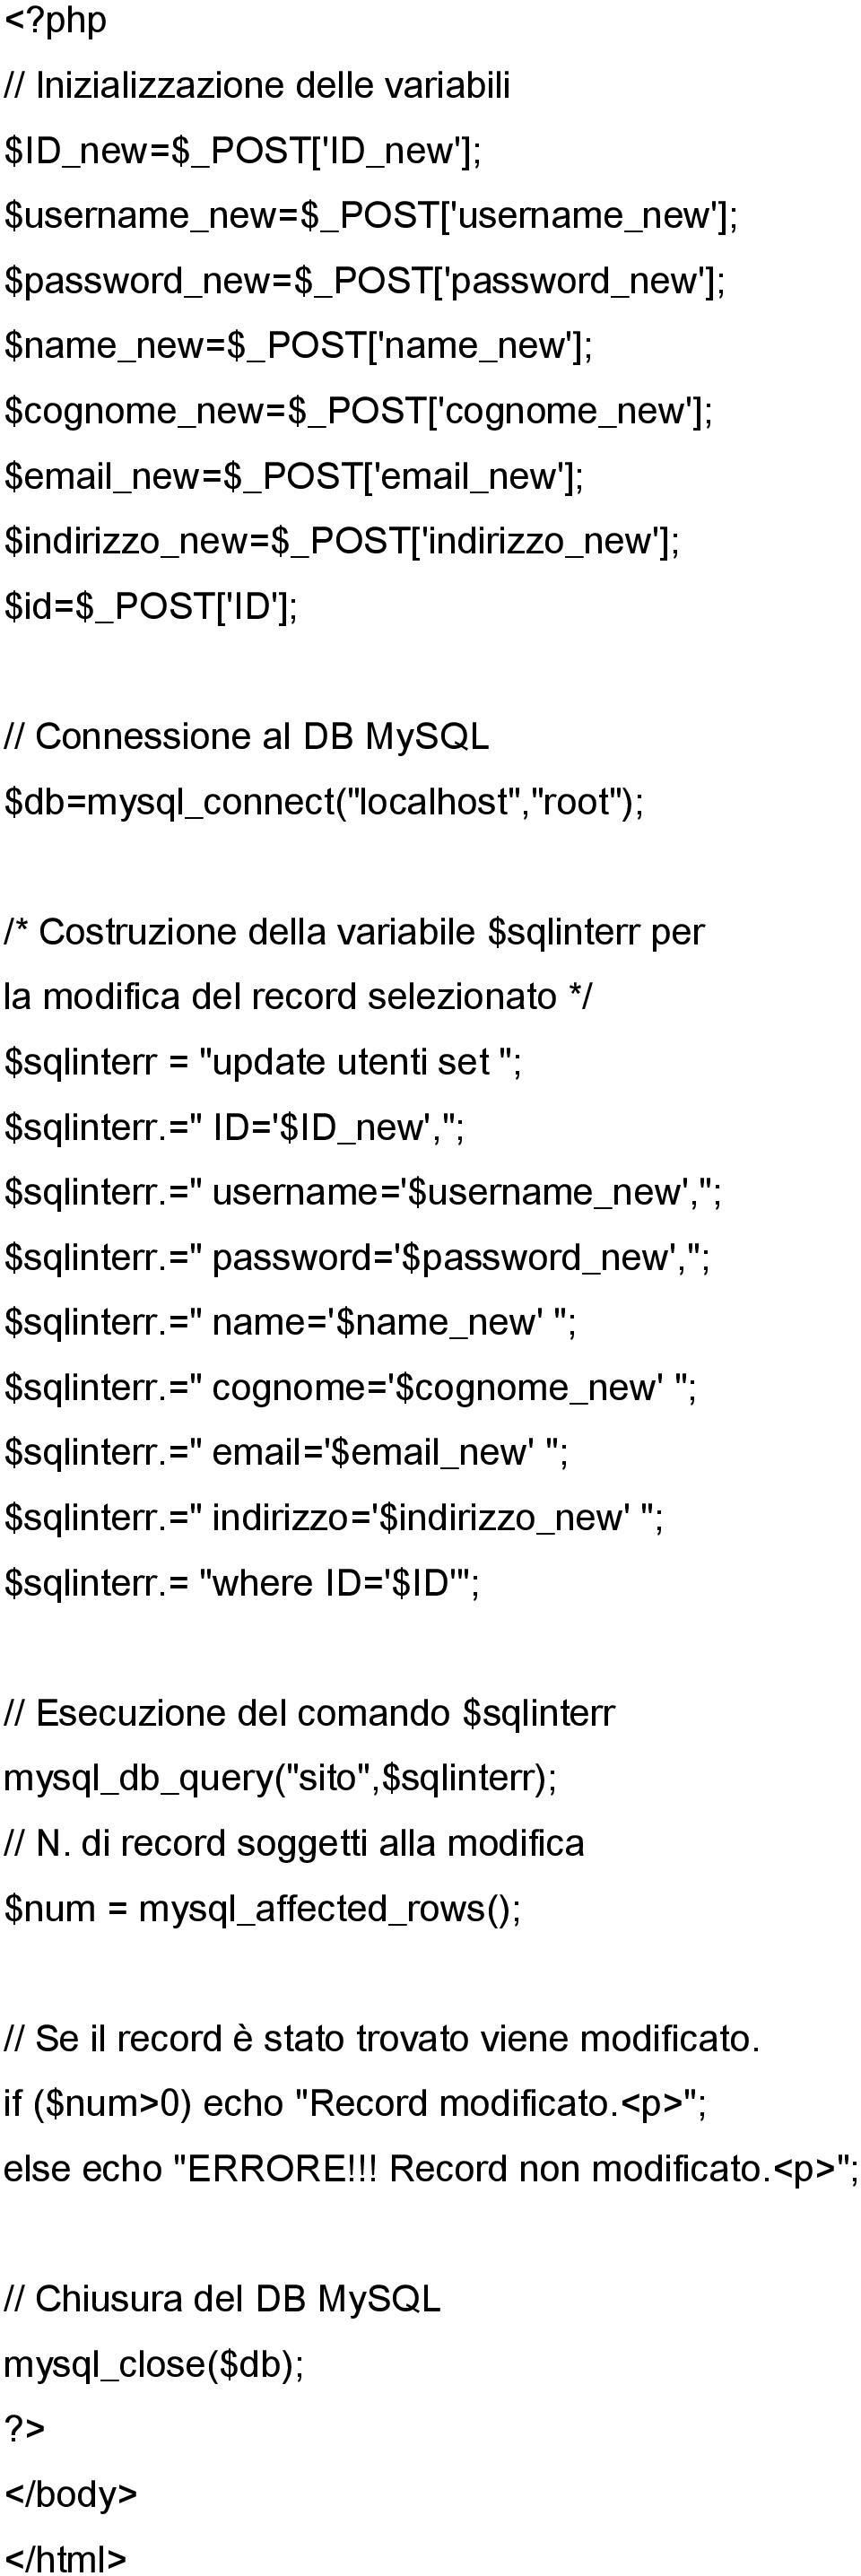 Costruzione della variabile $sqlinterr per la modifica del record selezionato */ $sqlinterr = "update utenti set "; $sqlinterr.=" ID='$ID_new',"; $sqlinterr.=" username='$username_new',"; $sqlinterr.